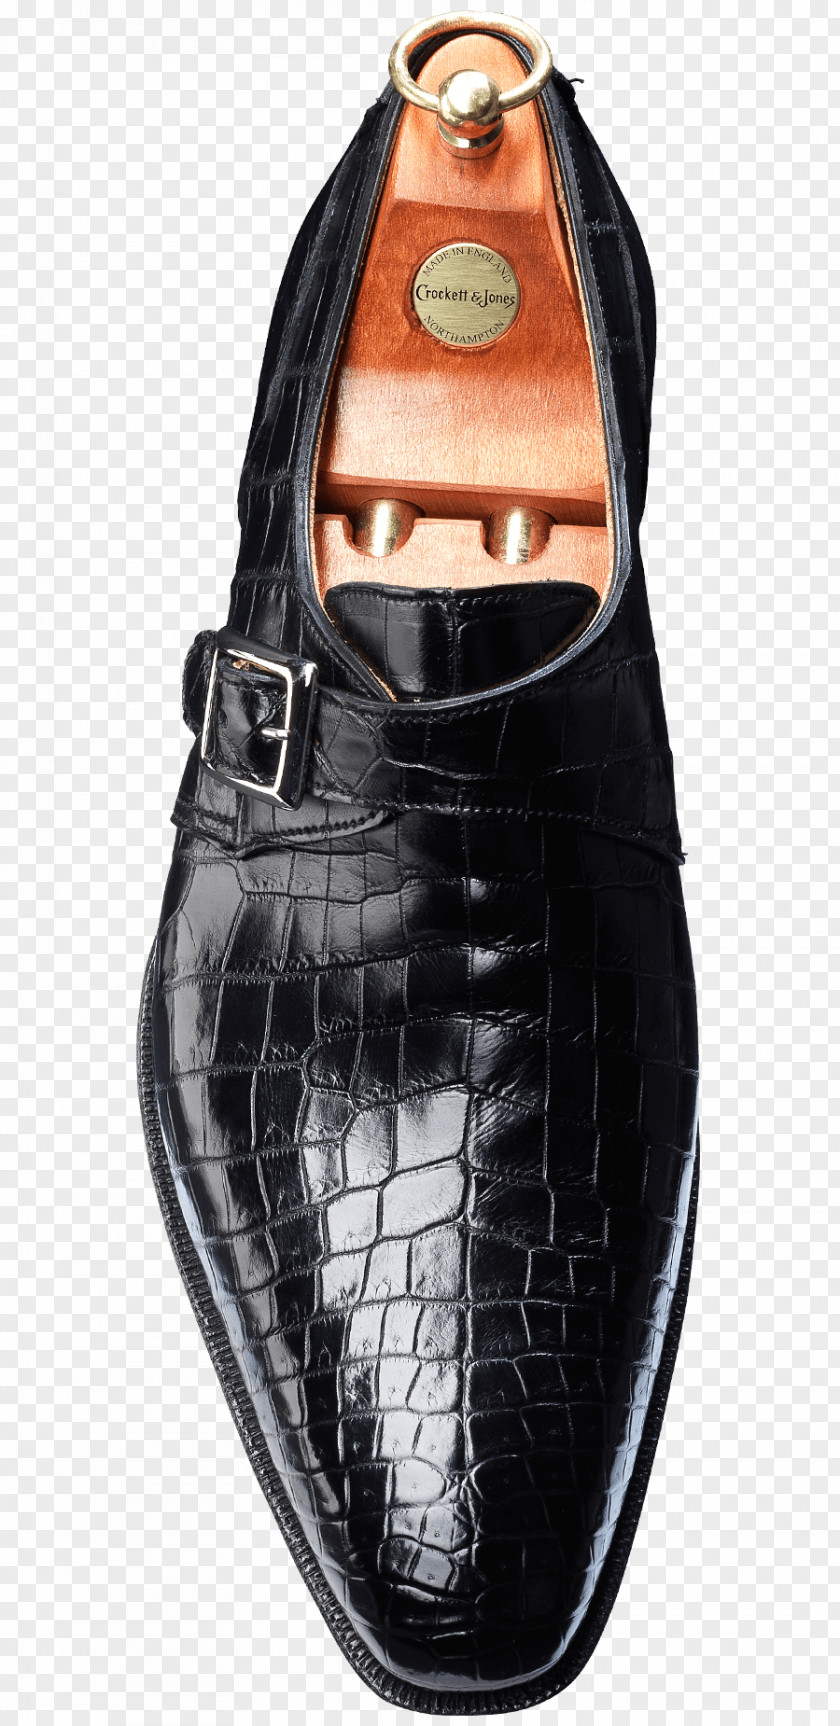 Crocodile In A Suit Monk Shoe Crockett & Jones Strap Buckle PNG